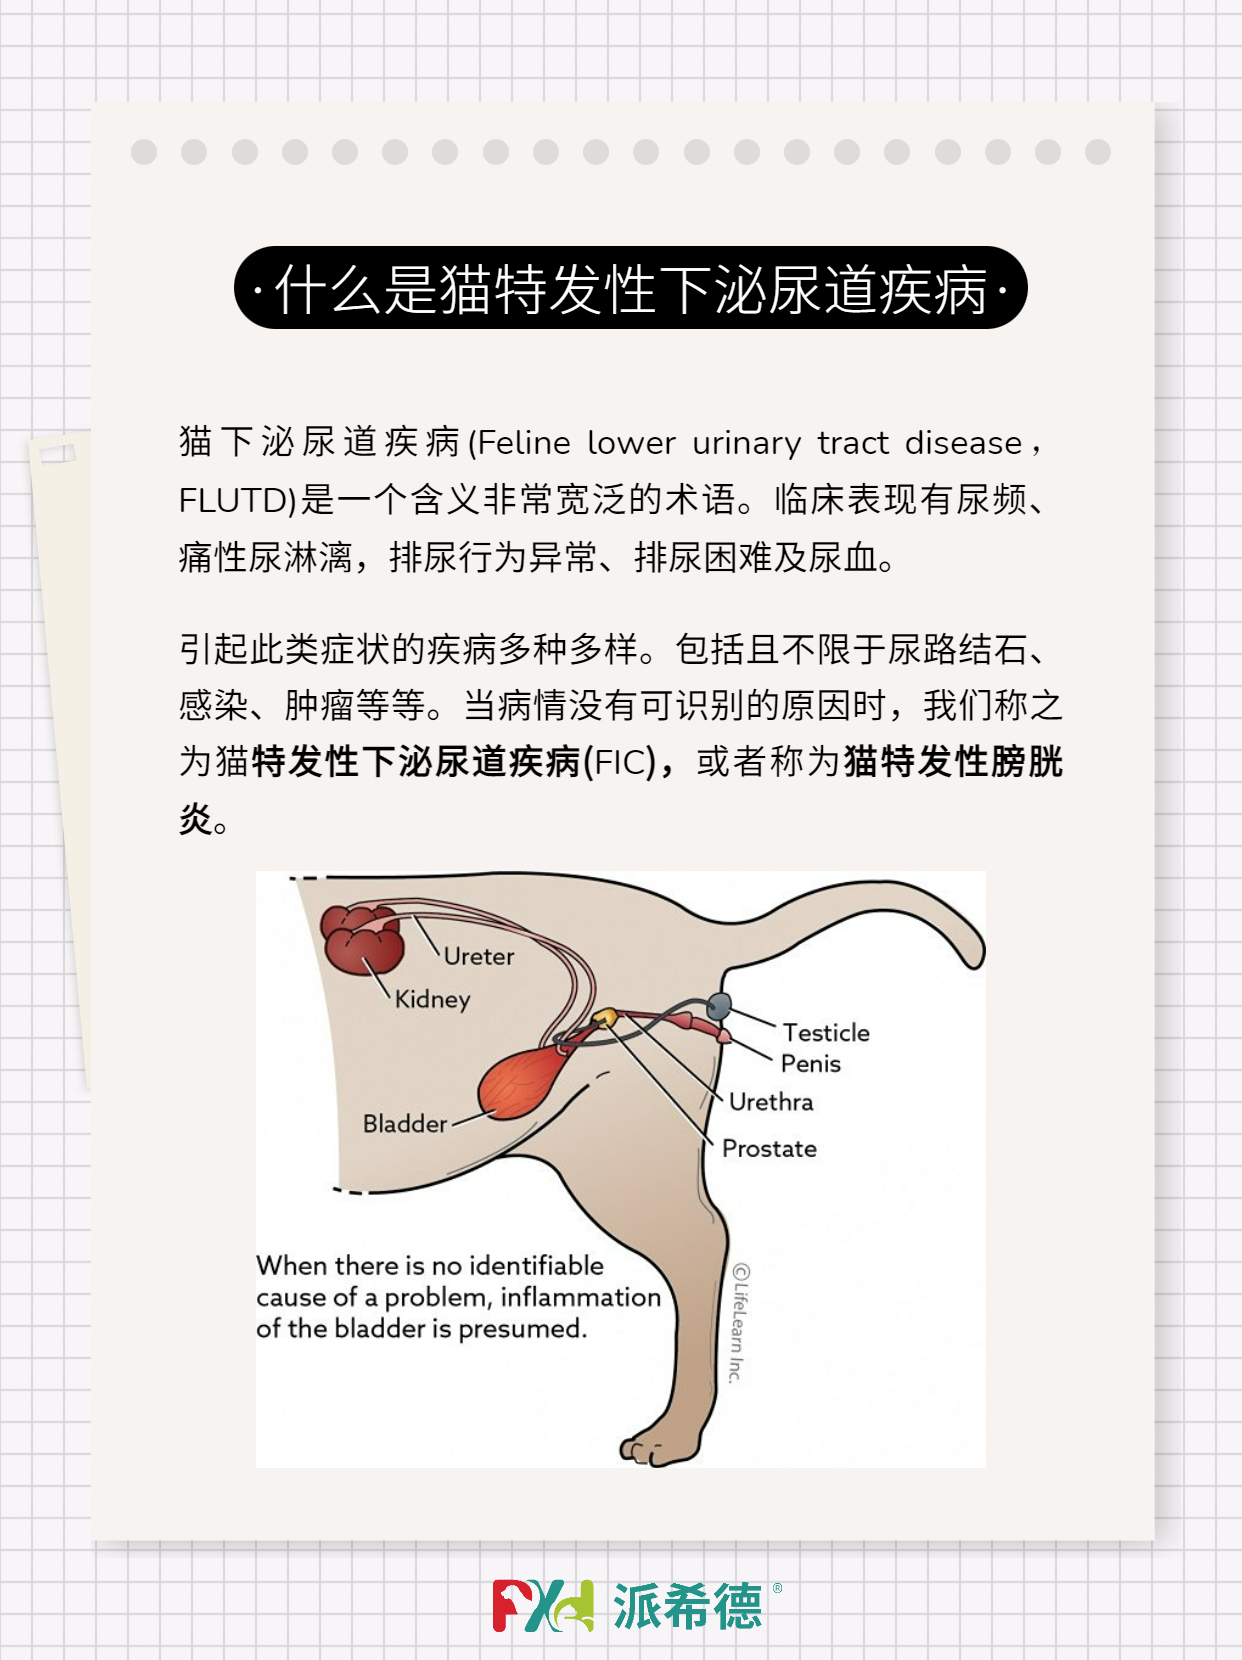 杭州美中宜和妇儿医院治疗尿道下裂及尿道下裂有哪几方面的异常_手术_阴茎_徐珊